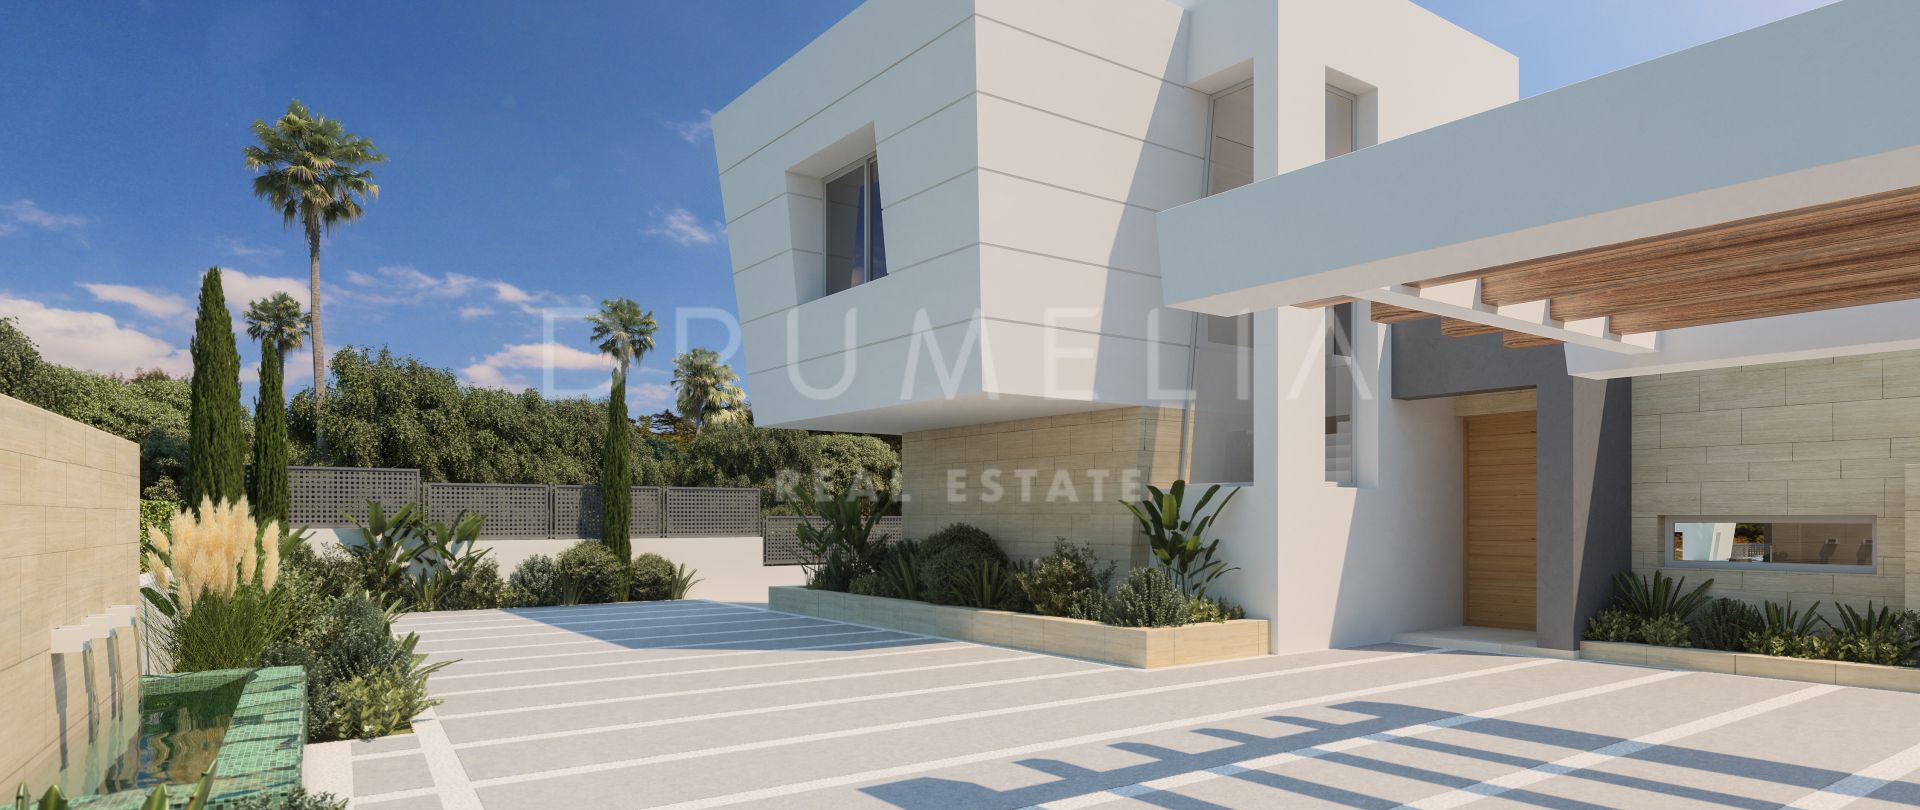 Großartiges Grundstück mit Projekt für eine moderne High-End-Villa in Rocio de Nagüeles an der Goldenen Meile von Marbella